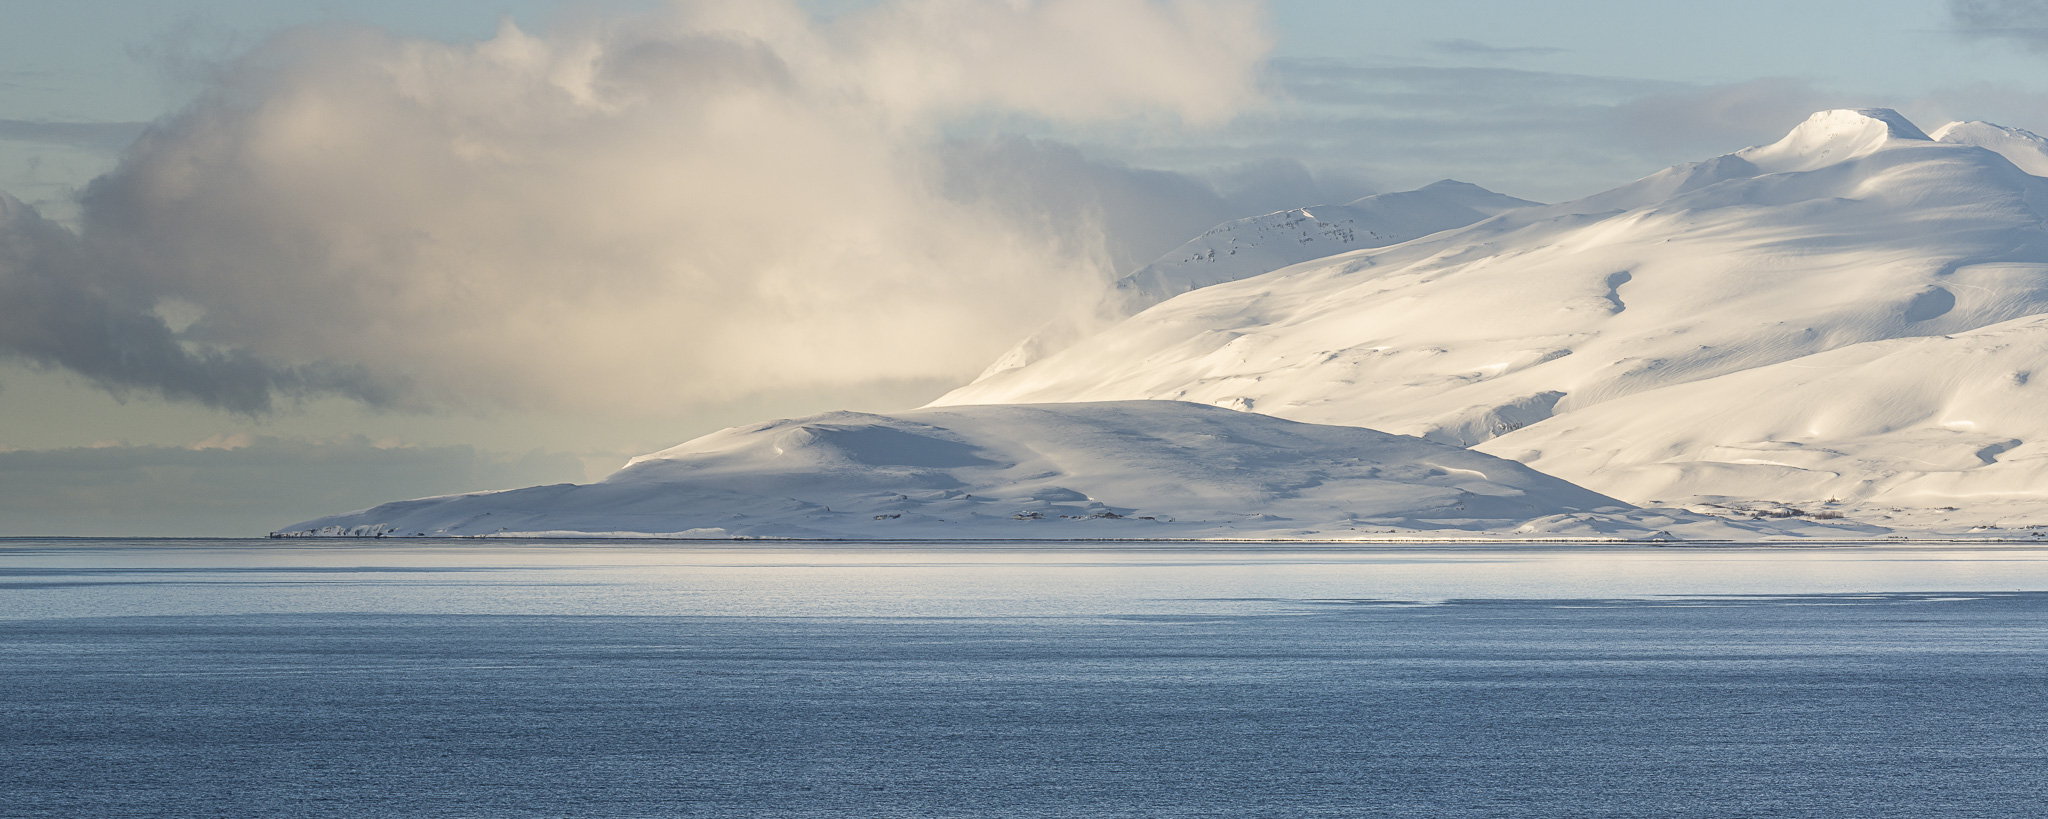 Panorama in Island einer Bucht mit schneebedeckten Bergen in blau und weiss.